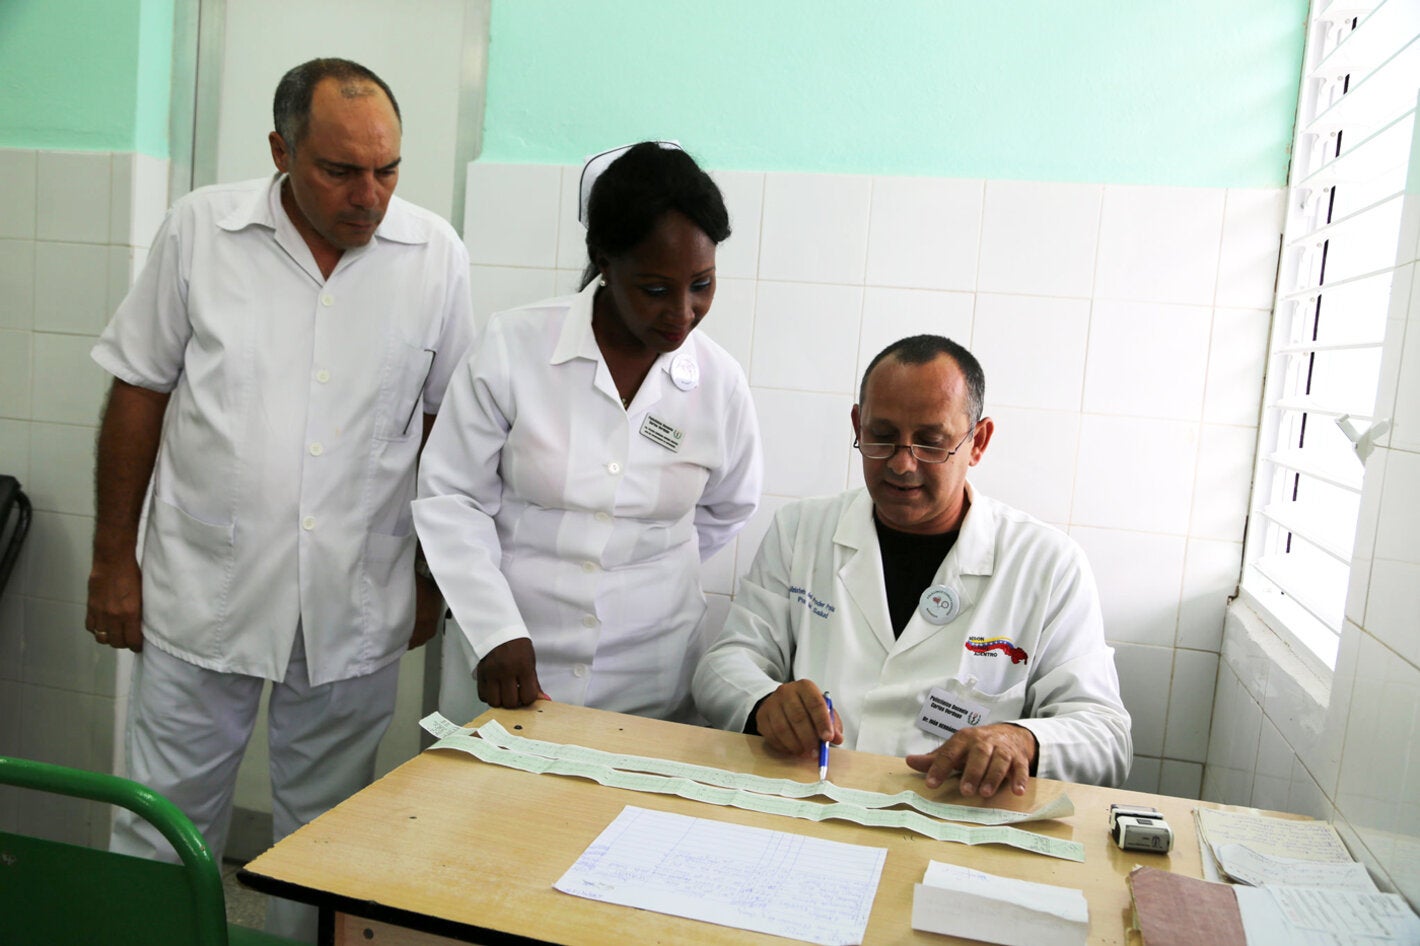 El doctor Iván Hernández Cruz comenta con el equipo de salud de la urgencia del Policlínico Verdugo, el electrocardiograma que le realizaron a una paciente que llegó con una crisis hipertensiva.